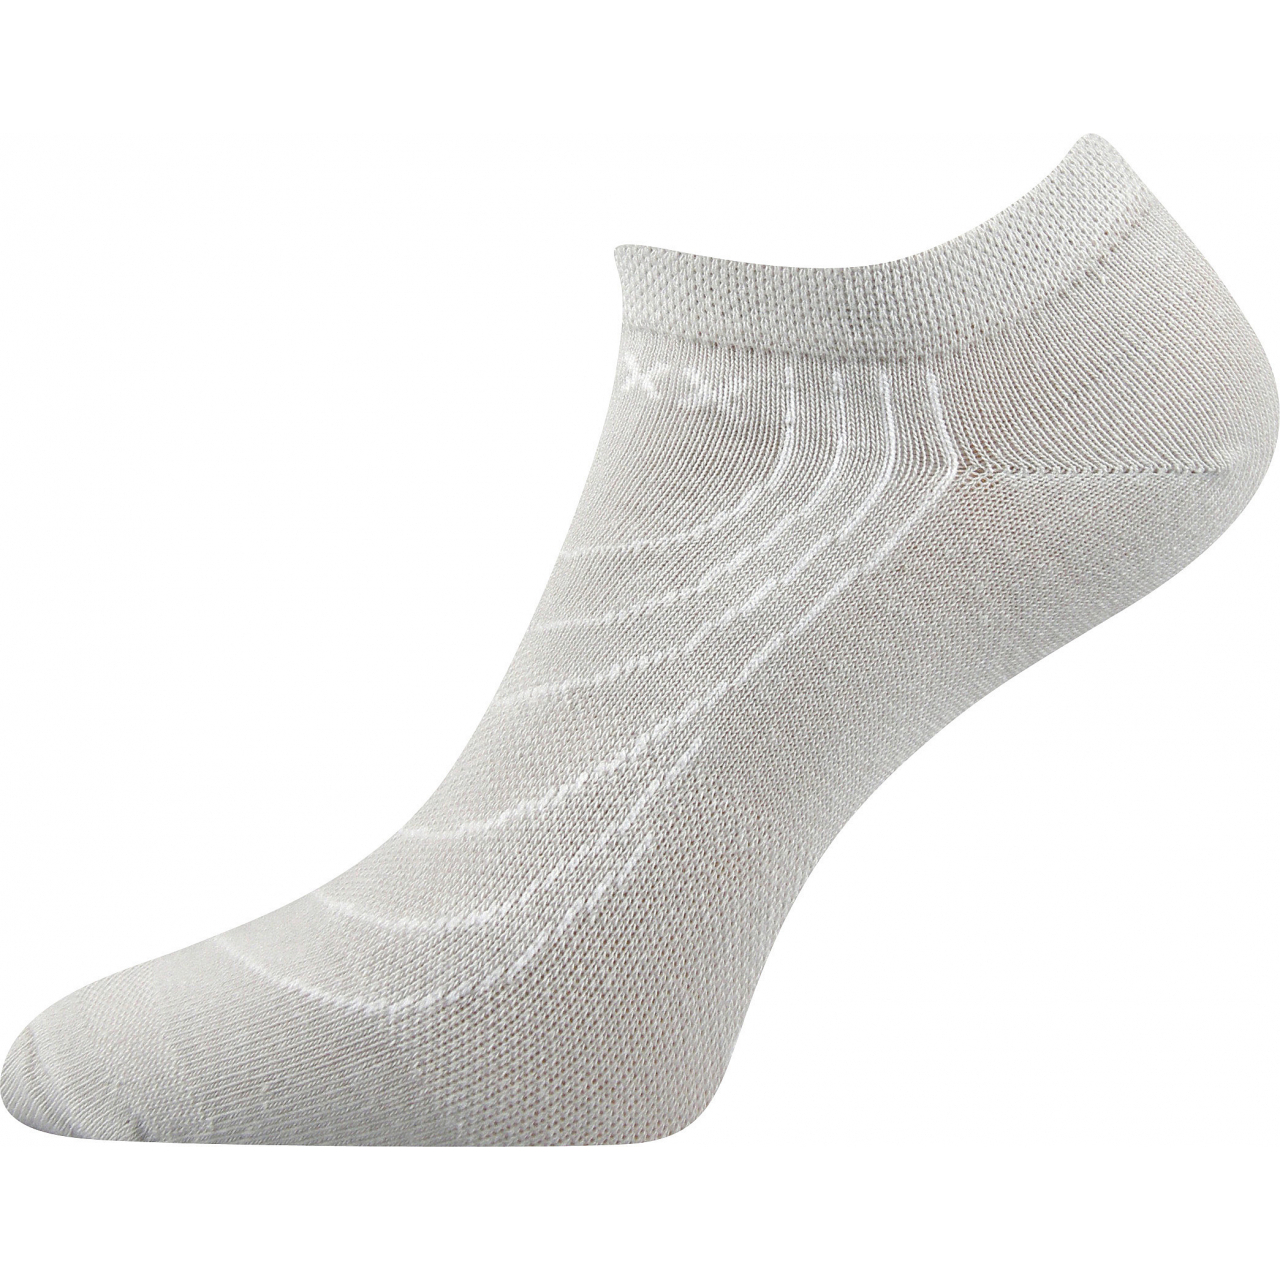 Ponožky nízké Voxx Rex - světle šedé, 39-42